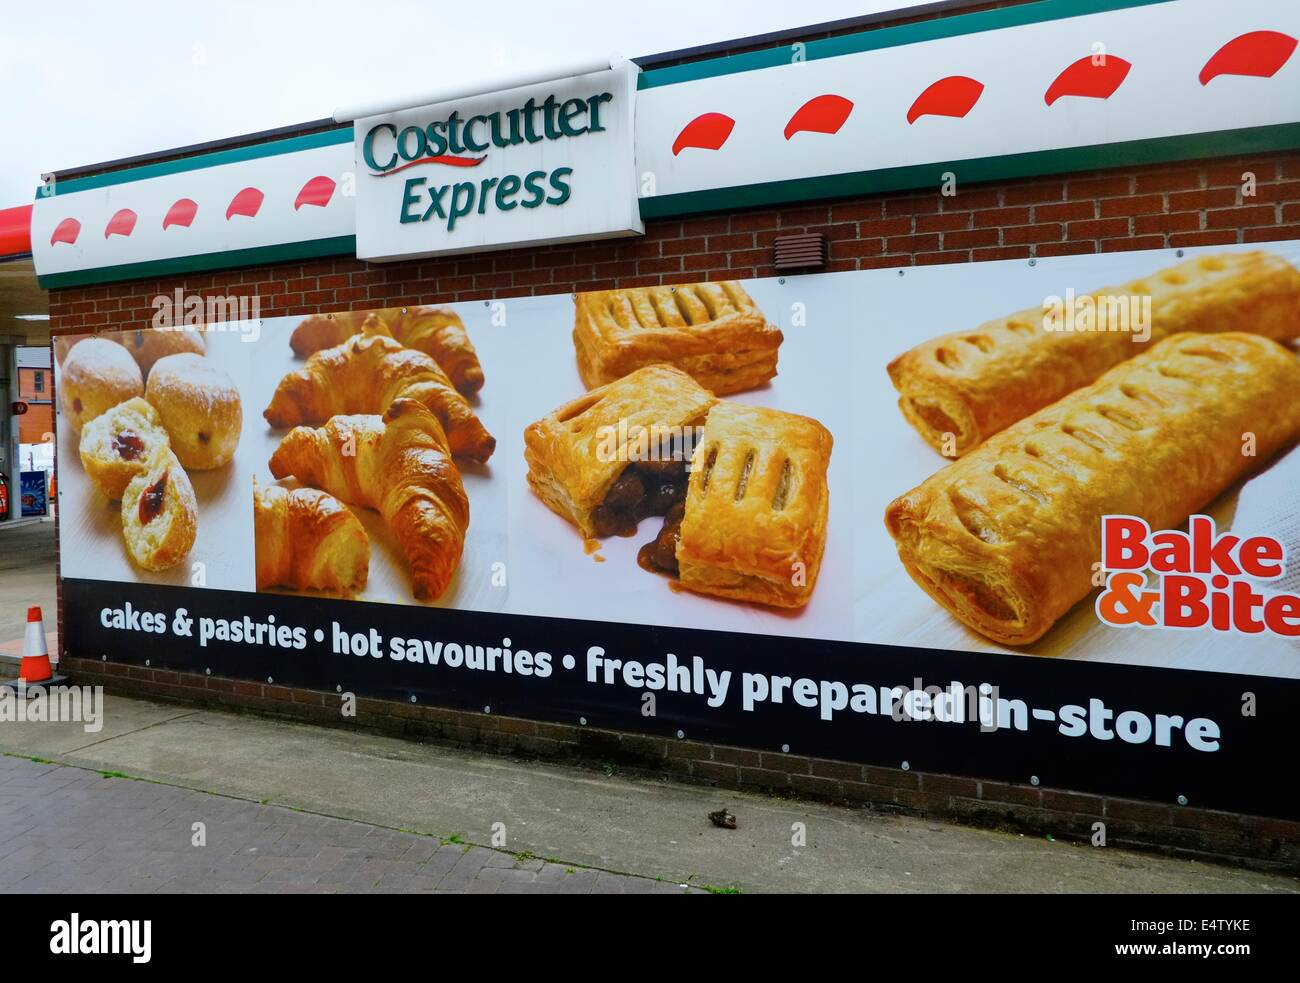 Costcutter express.bannière géante publicité conseil produit fraîchement préparé dans store england uk Derby Banque D'Images